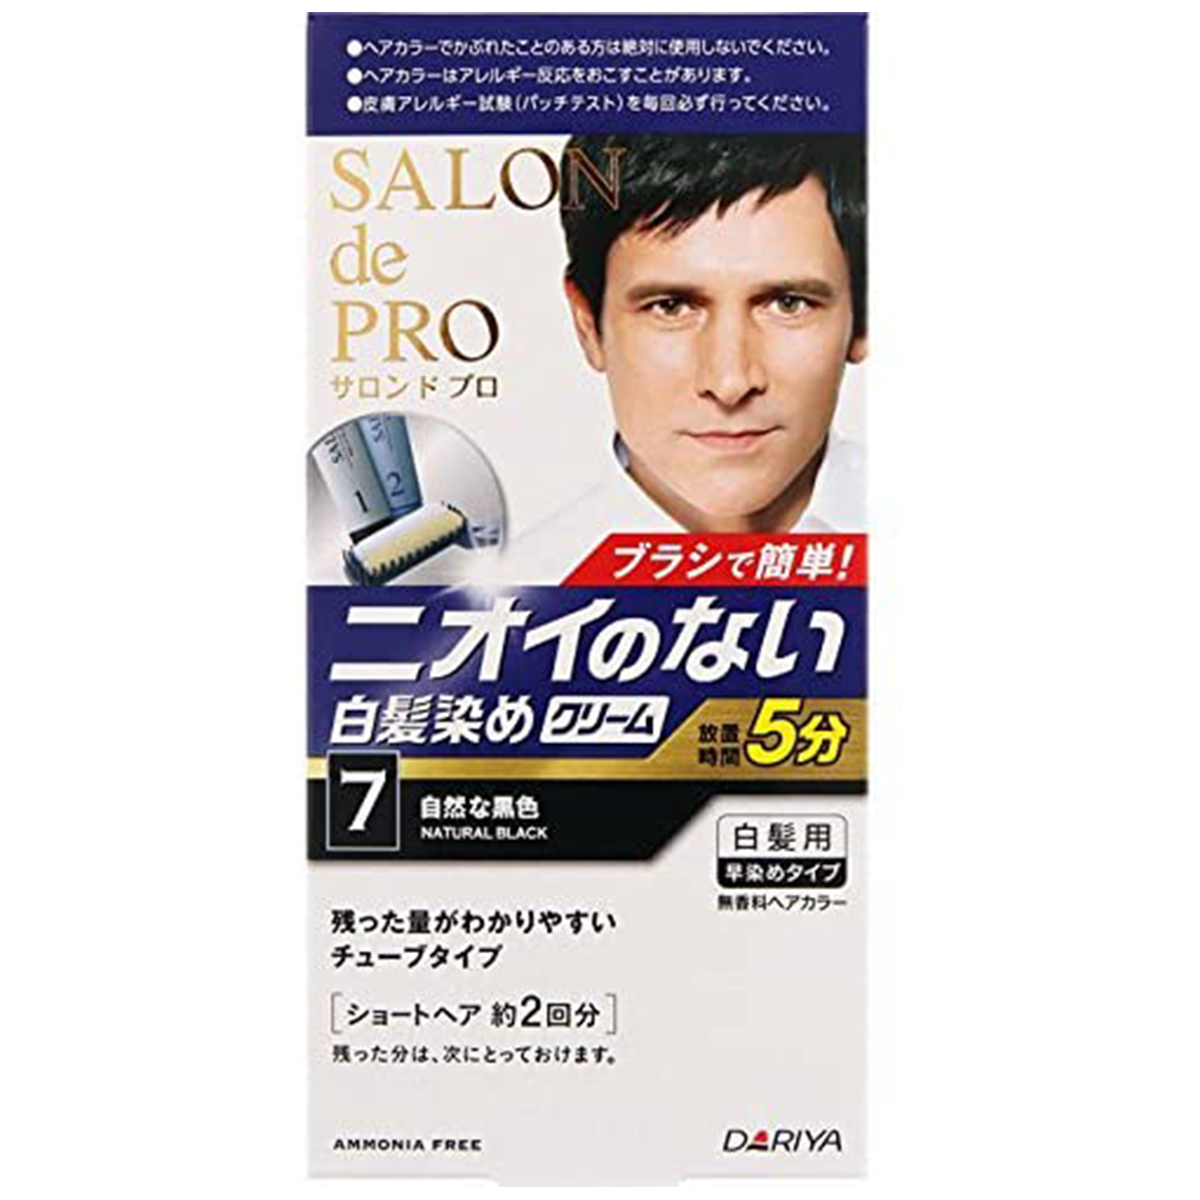 サロンドプロ 無香料ヘアカラー メンズスピーディ 白髪用 7（自然な黒色）×1個の商品画像